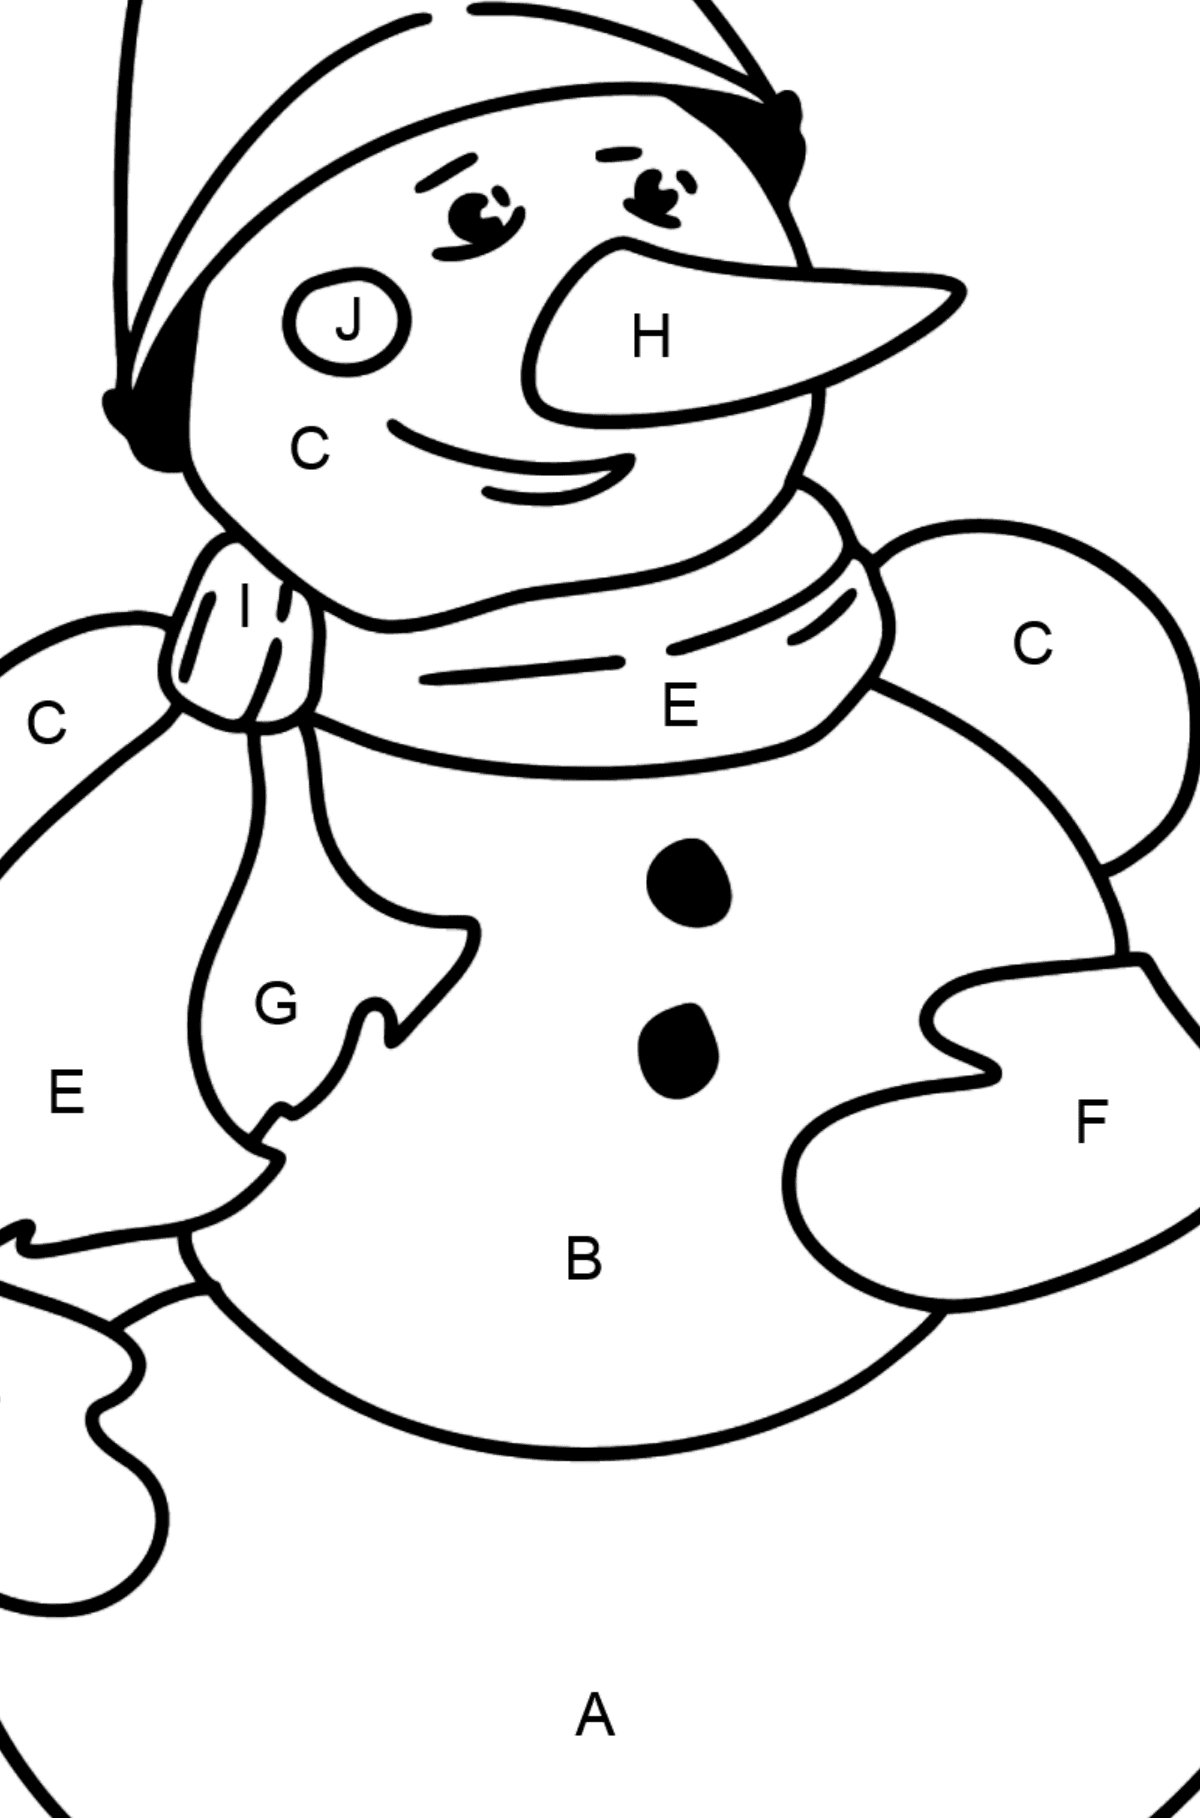 Dibujo de muñeco de nieve para colorear - Colorear por Letras para Niños